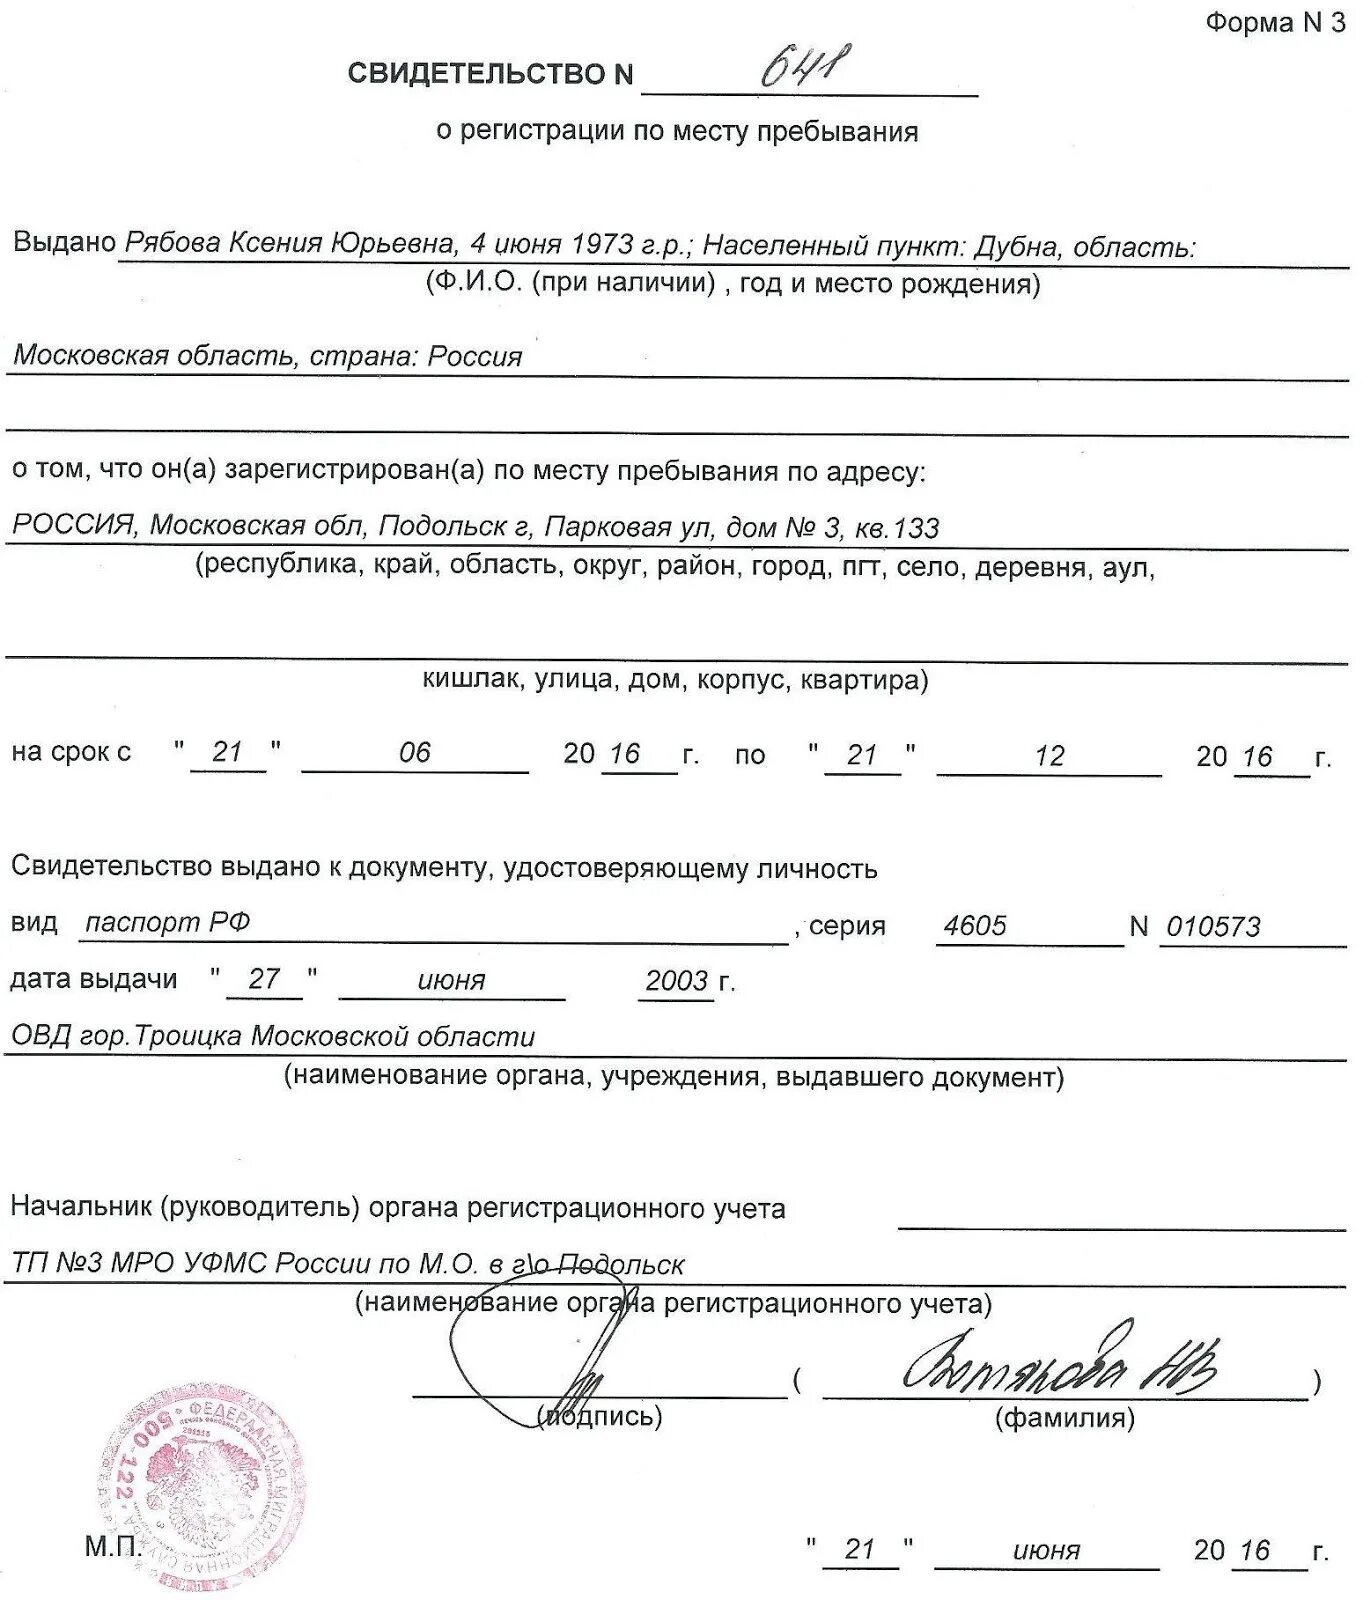 Как сделать регистрацию в россии. Свидетельство о регистрации по месту пребывания форма 3. Как выглядит временная регистрация. Временная регистрация форма 3. Временная регистрация форма 3 образец.